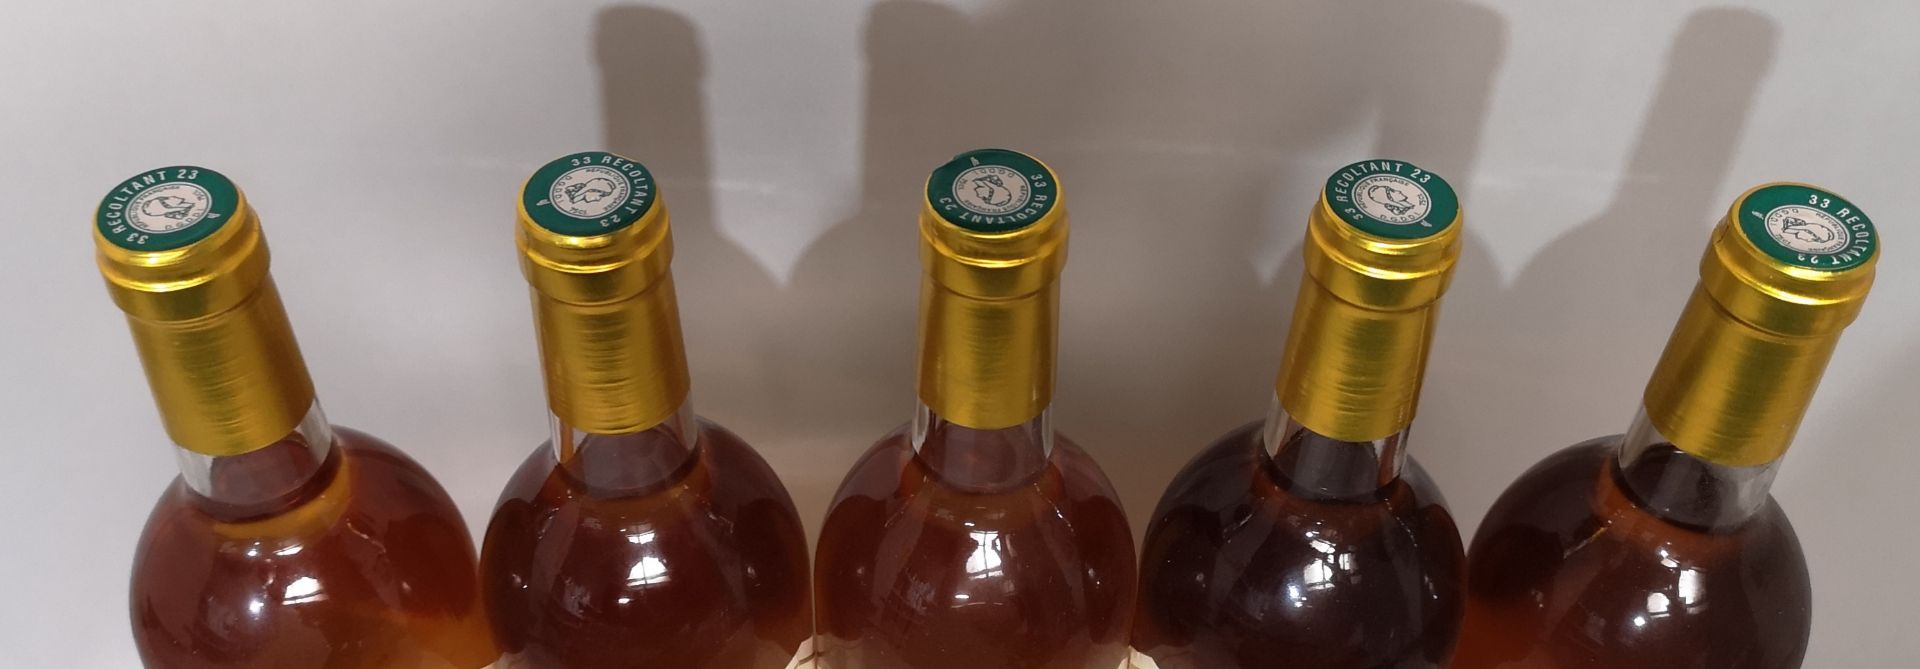 5 bottles Château LES ROQUES "Cuvée Frantz" - Loupiac 2002.
 Labels slightly stained. - Bild 2 aus 2